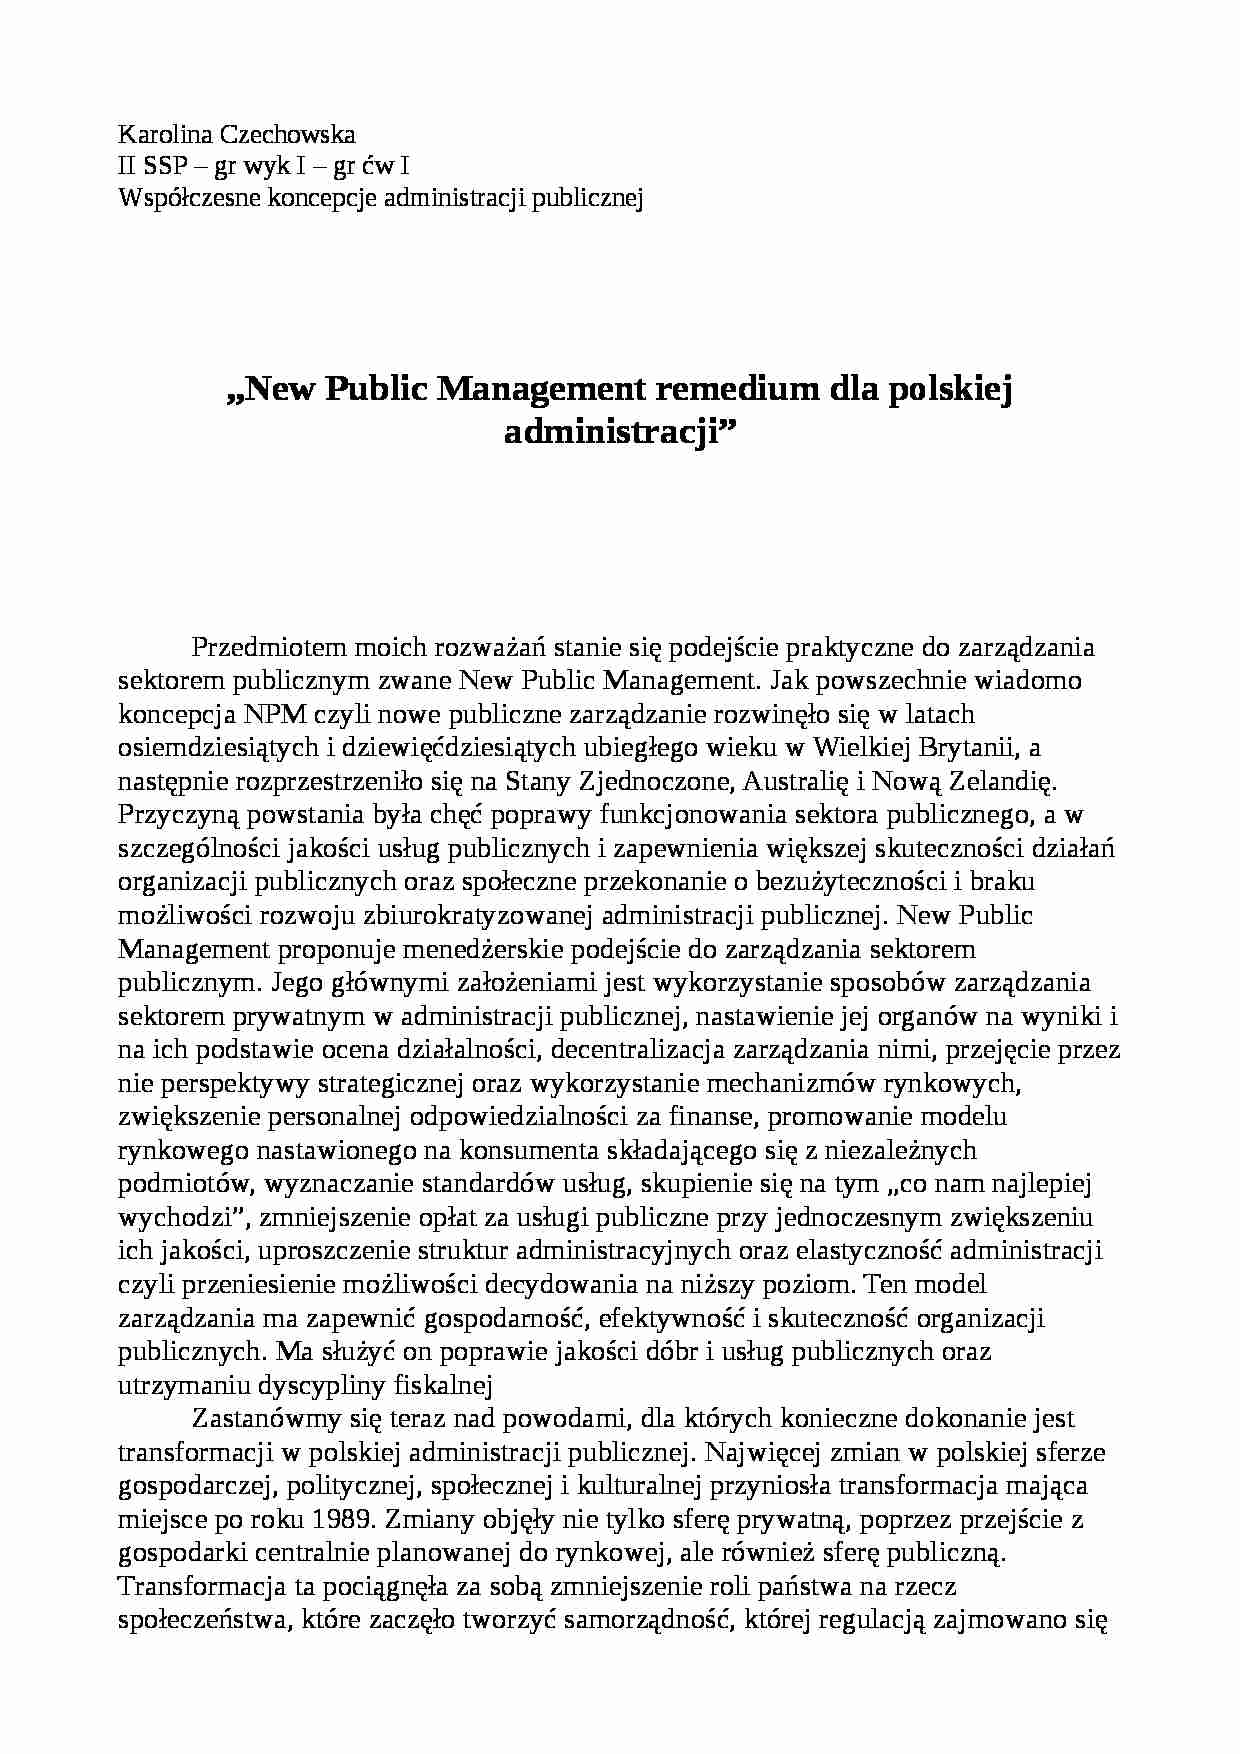 New Public Managment - remedium dla polskiej administracji - strona 1